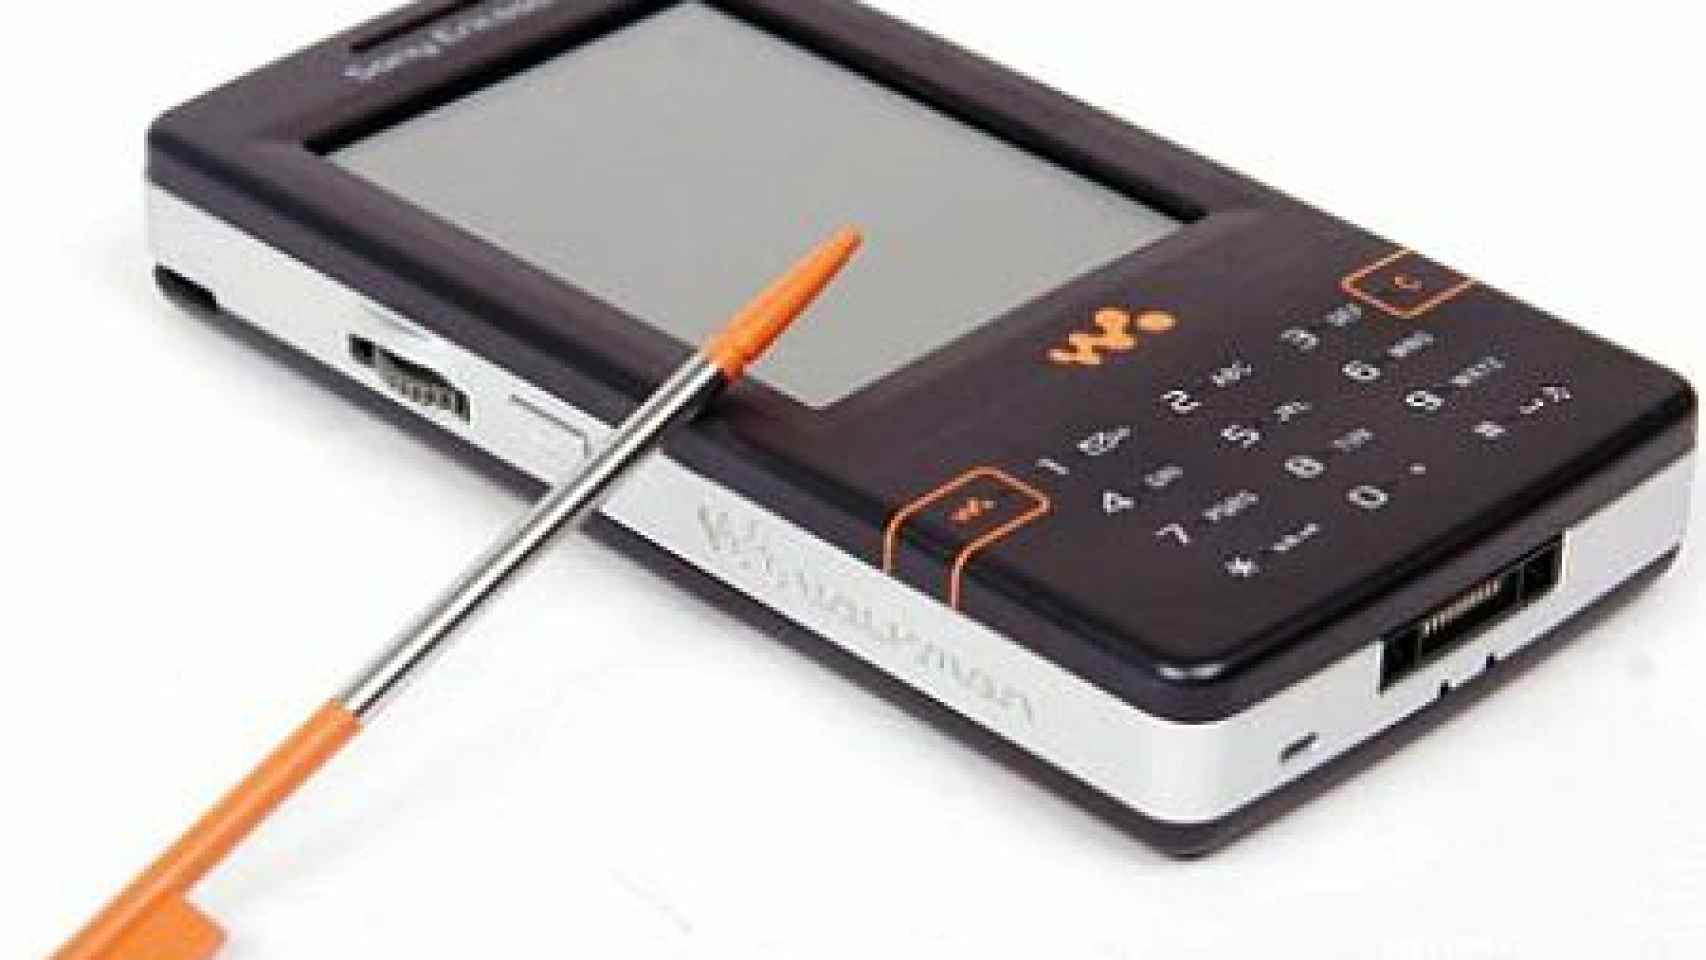 En 2006 Sony Ericsson presentaba ¡el móvil walkman! El mítico W950